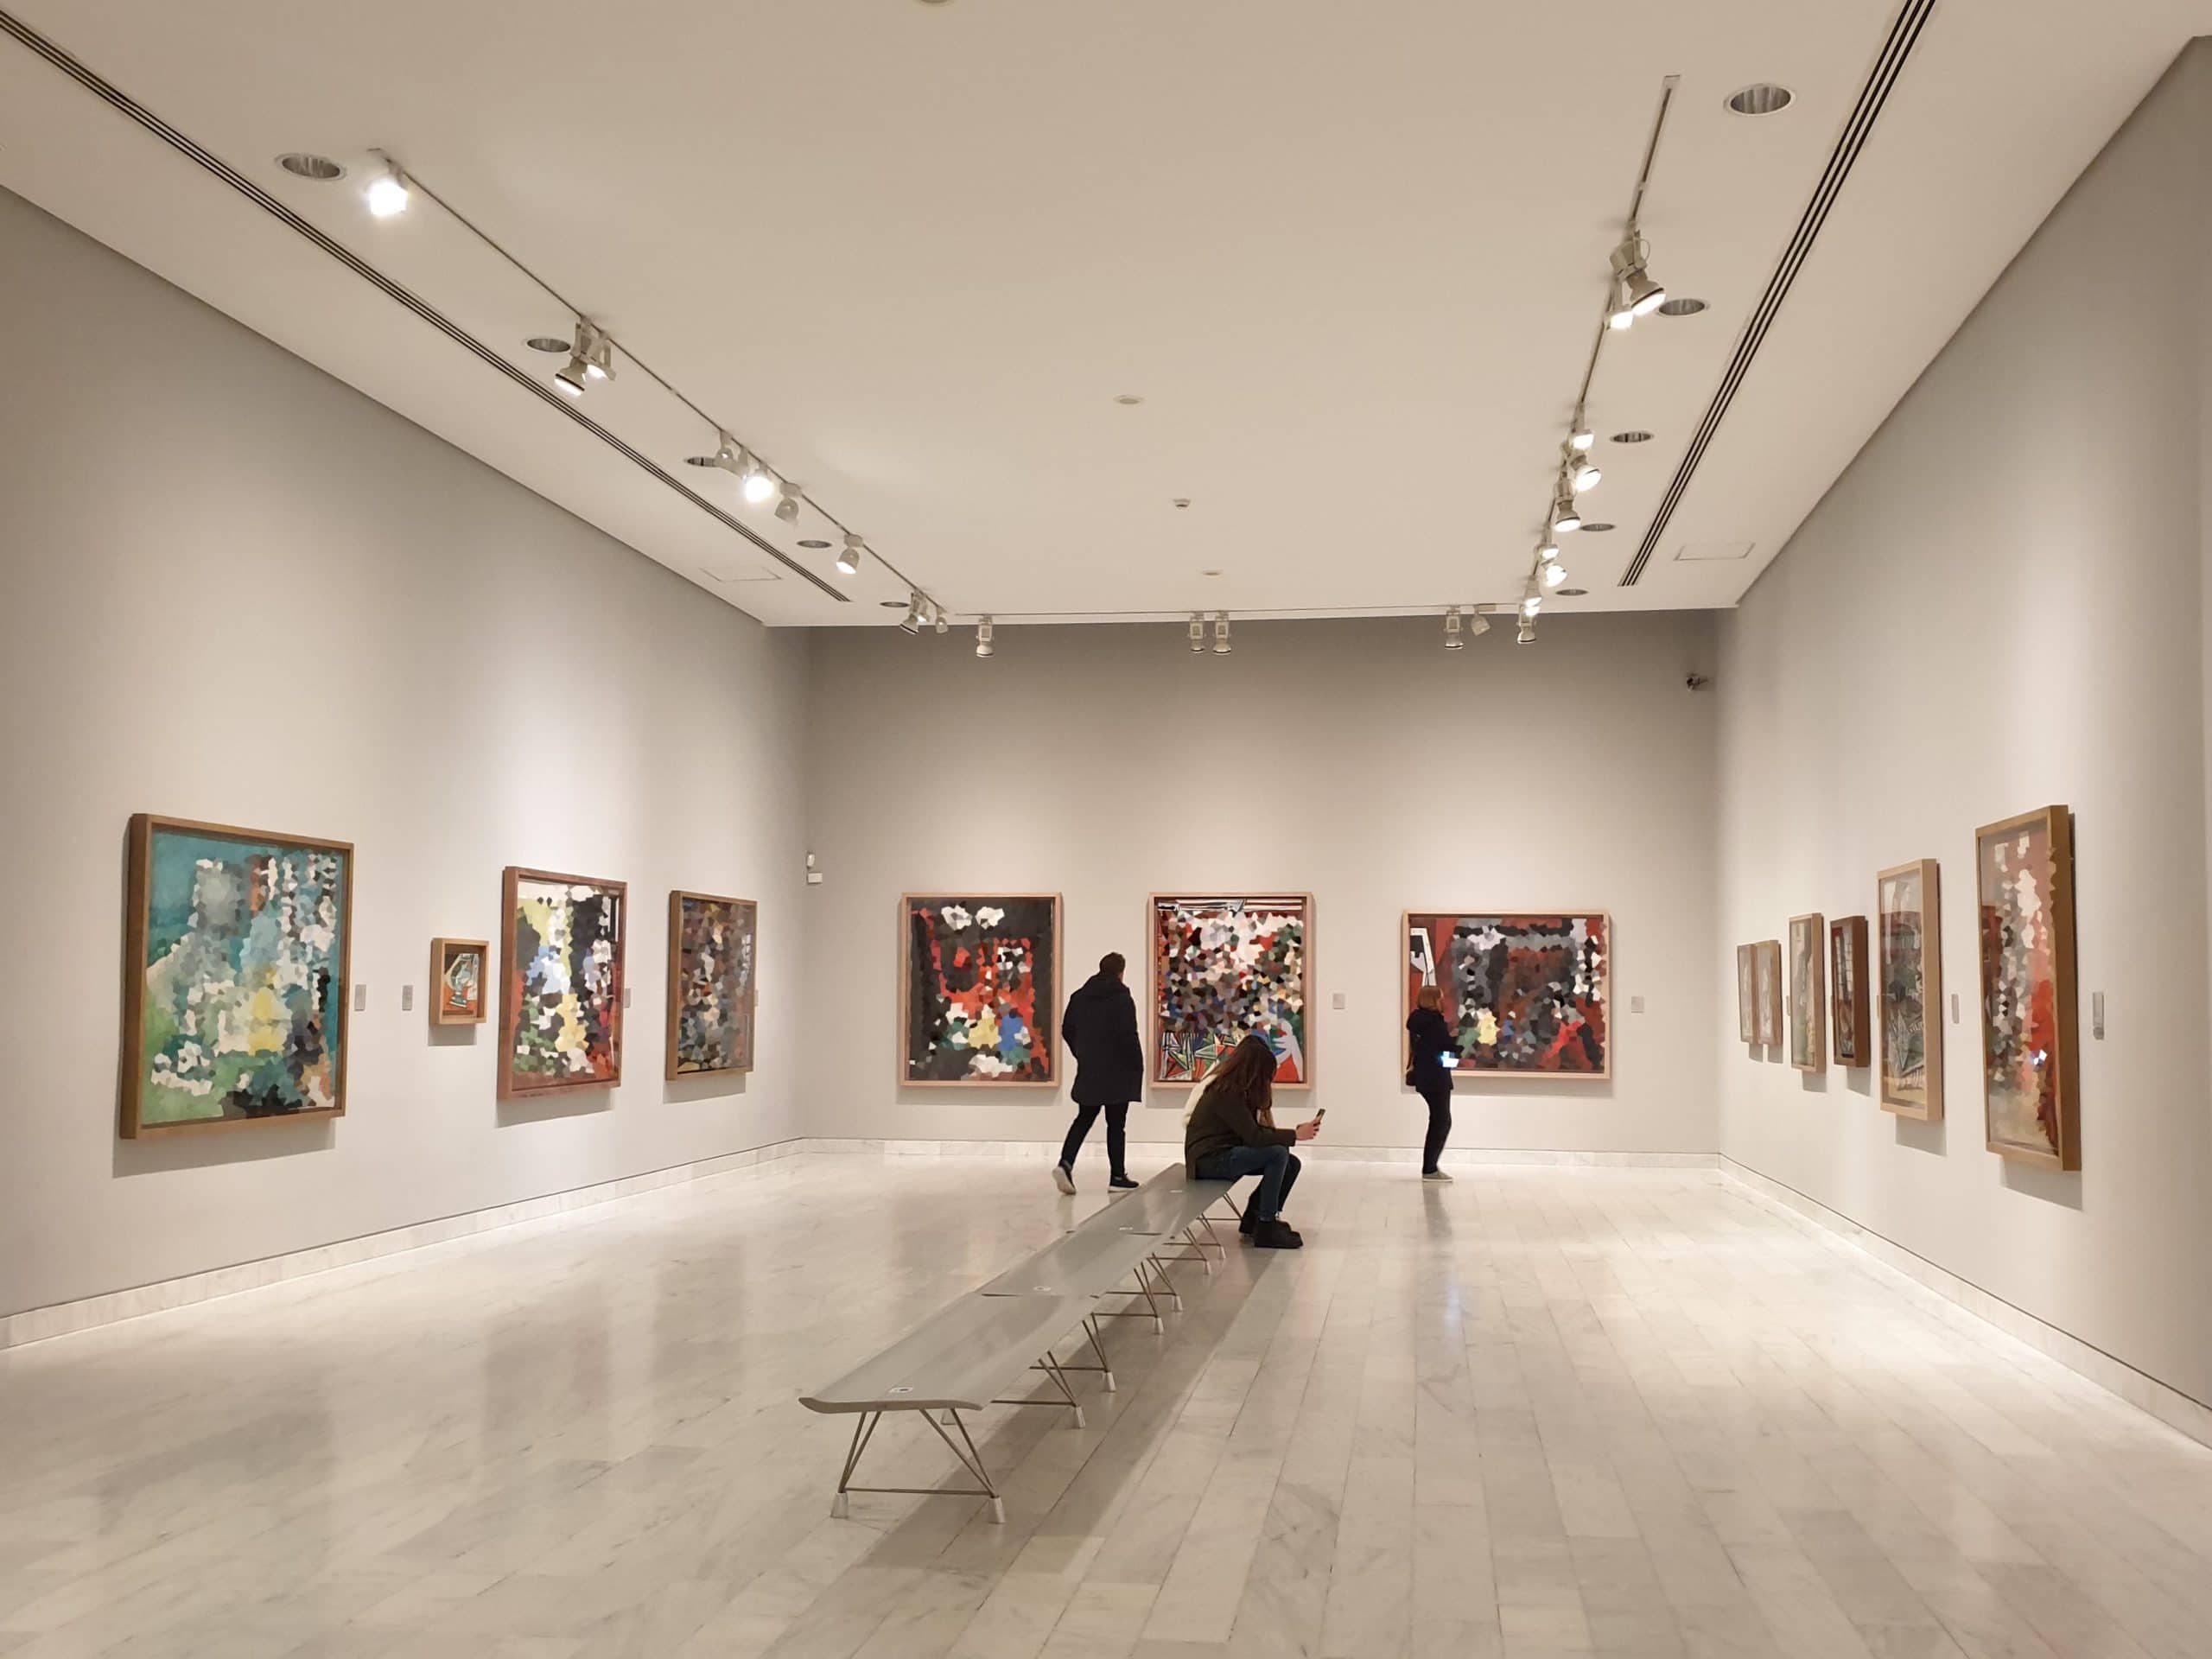 Exposition au Musée Picasso de Barcelone. Des peintures de Las Meninas et trois visiteurs.